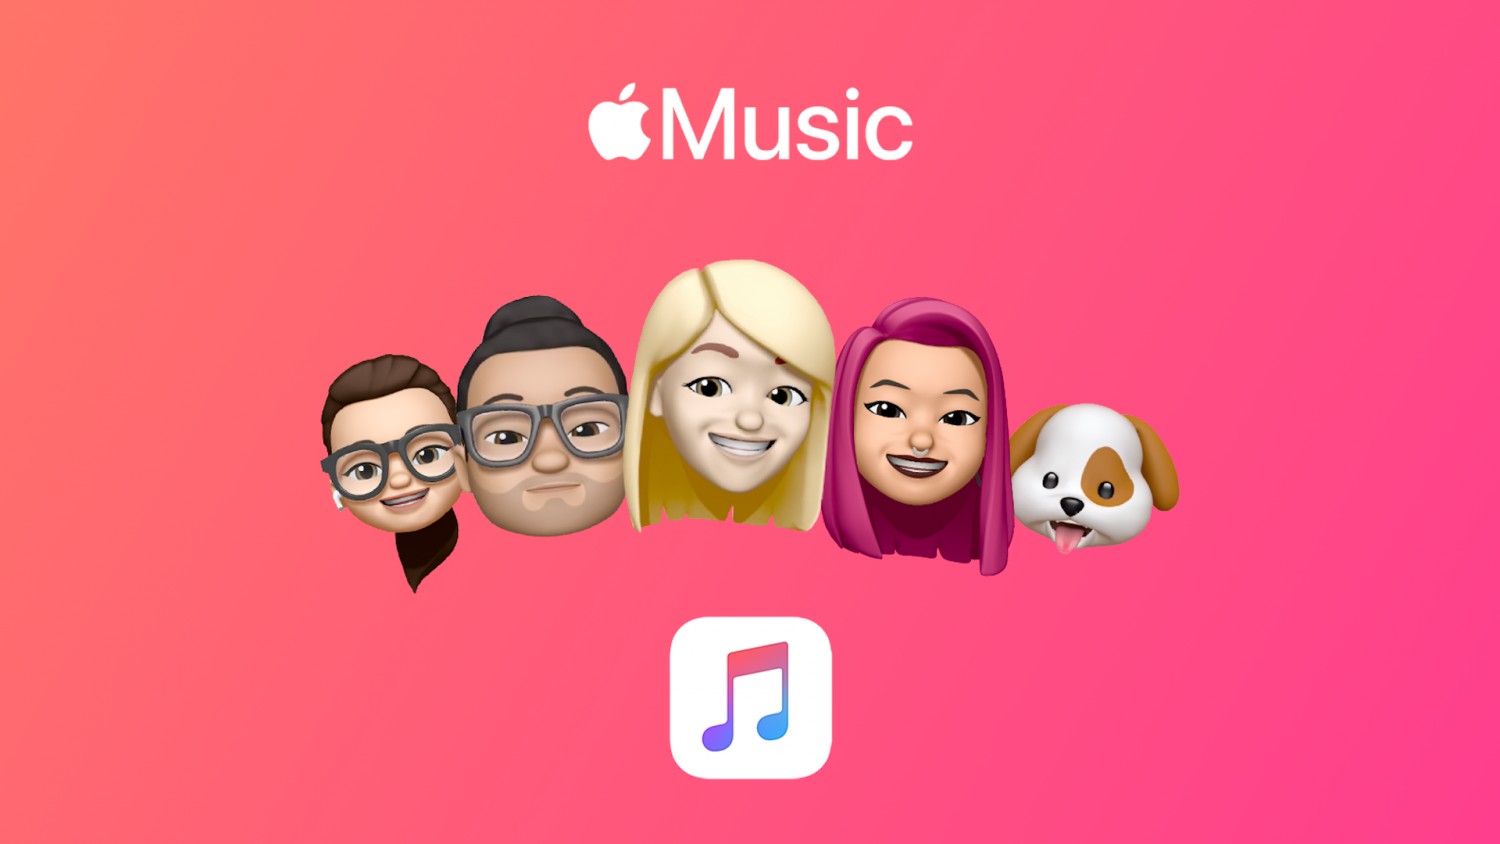 Бесплатная подписка на Apple Music для «старых» и новых пользователей